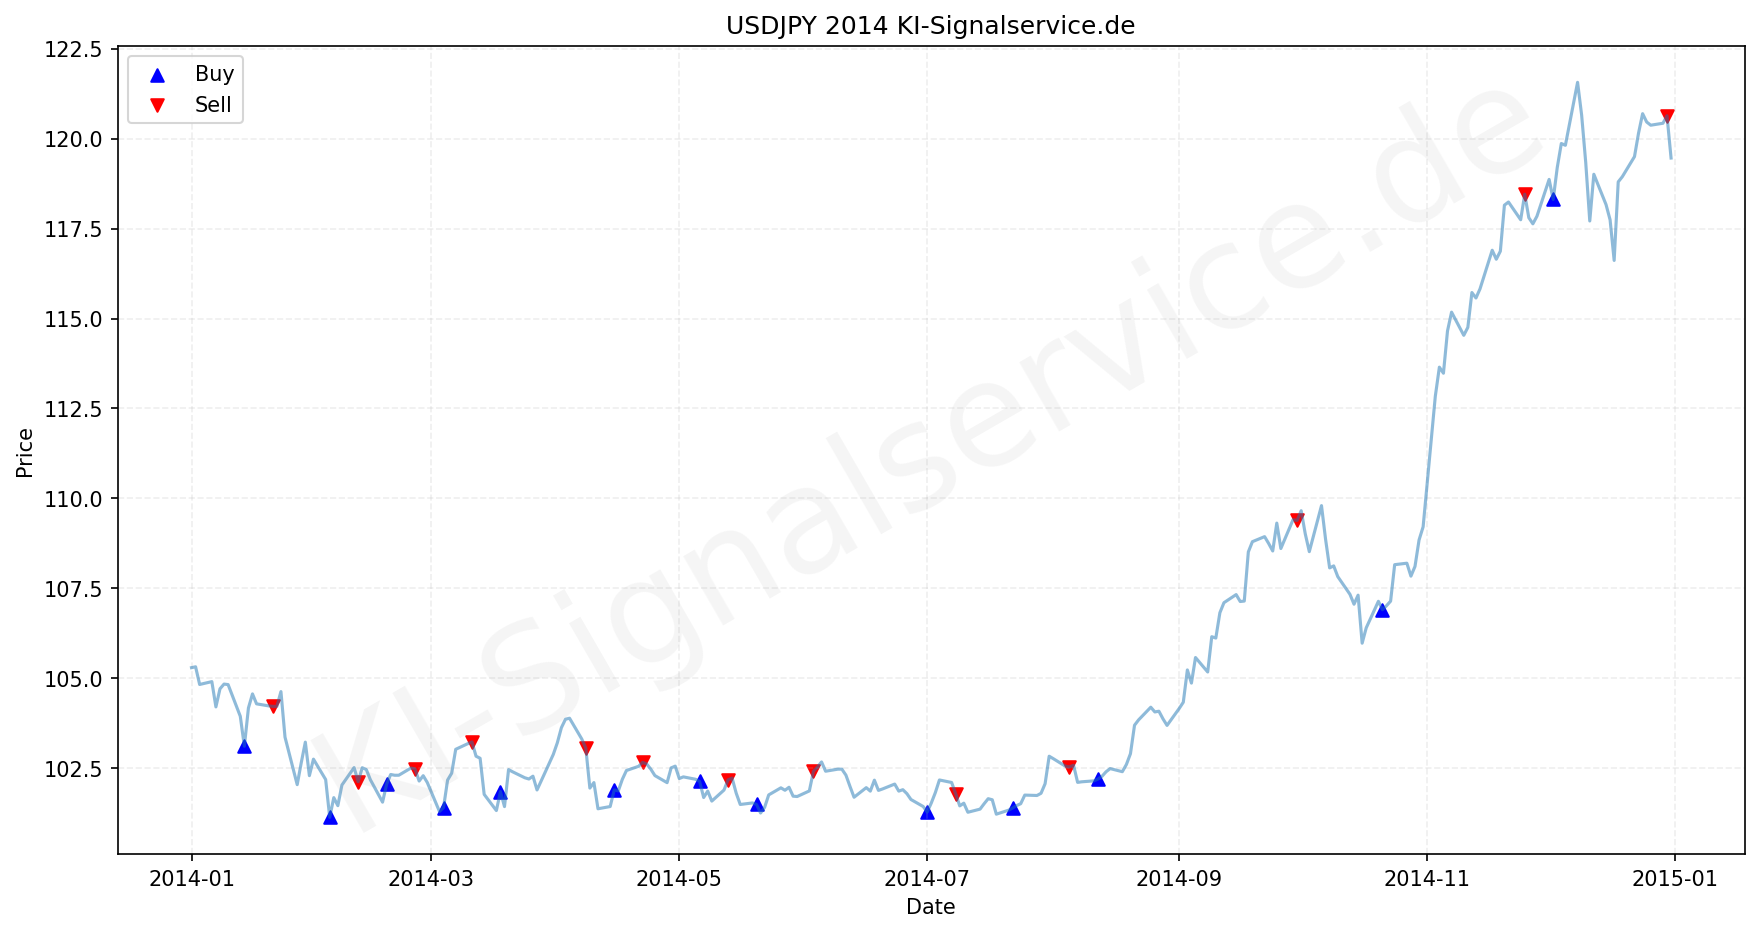 USDJPY Chart - KI Tradingsignale 2014